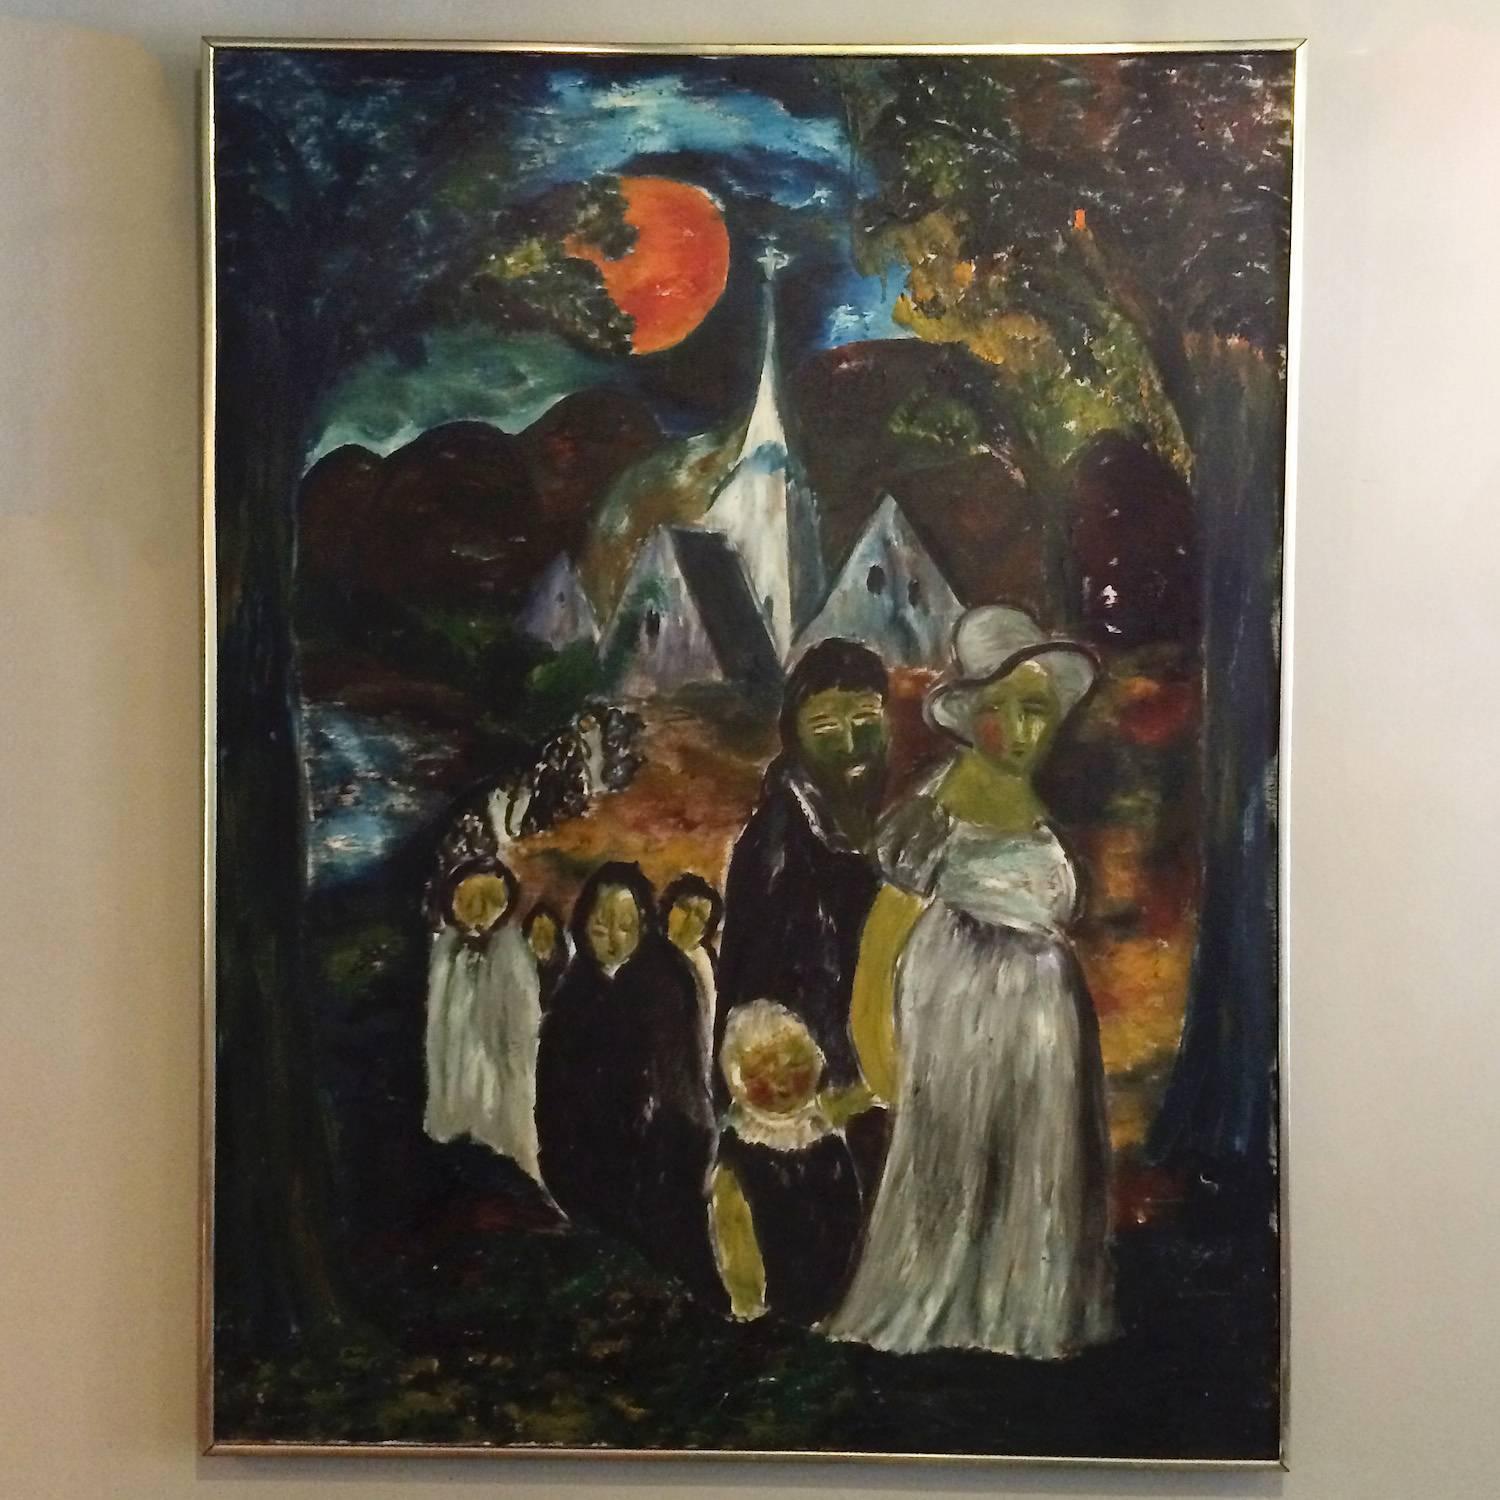 Cette impressionnante peinture acrylique d'art populaire représentant une procession d'église obsédante au clair de lune est signée par l'artiste né au Danemark et datée de 1963. Il y a une petite déchirure dans la toile, comme indiqué. Le cadre est